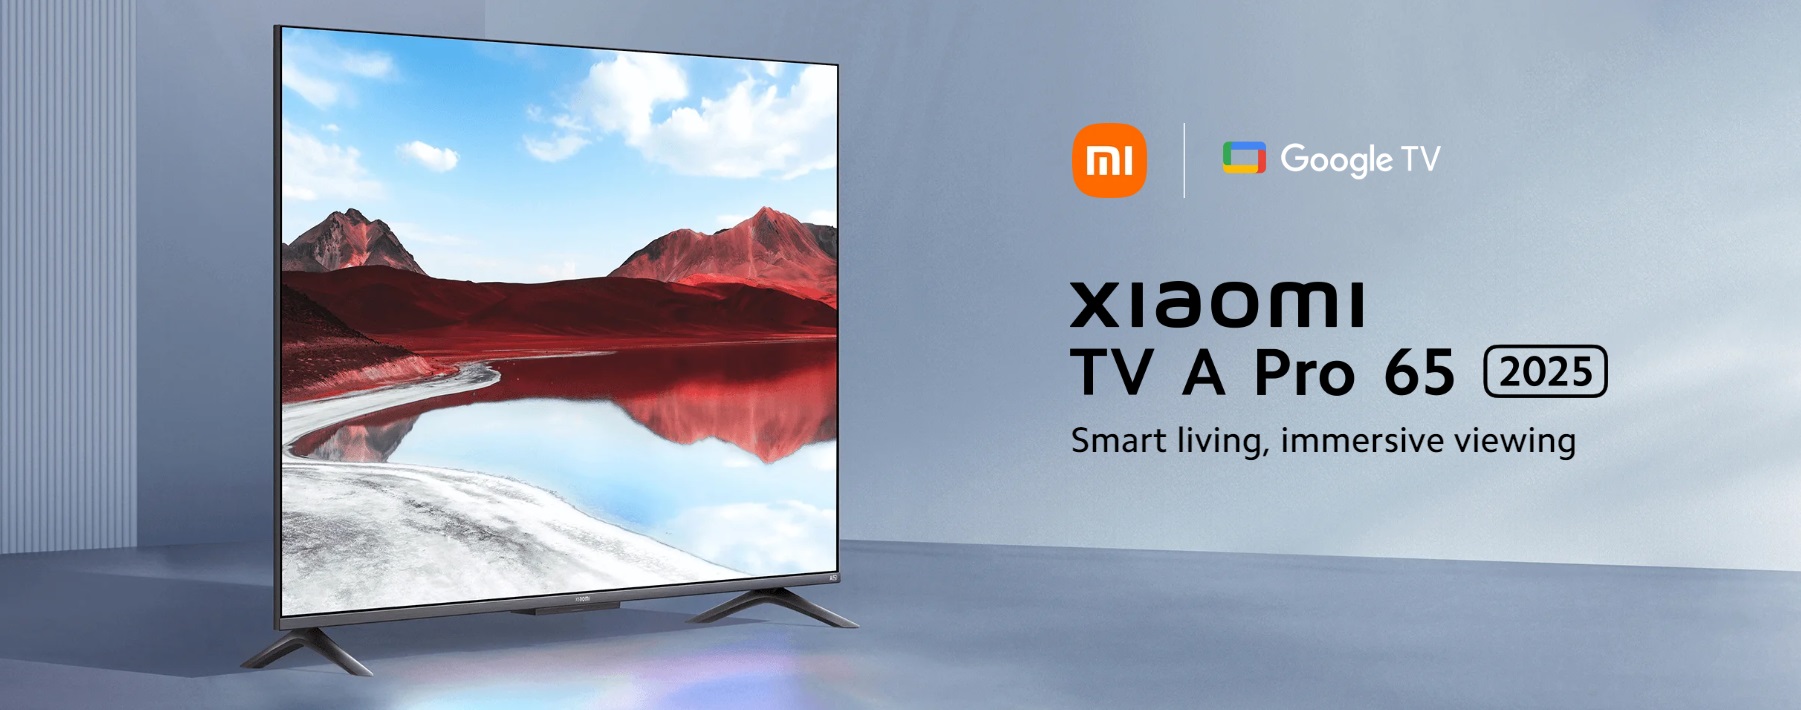 Смарт телевизор Xiaomi - A Pro 2025